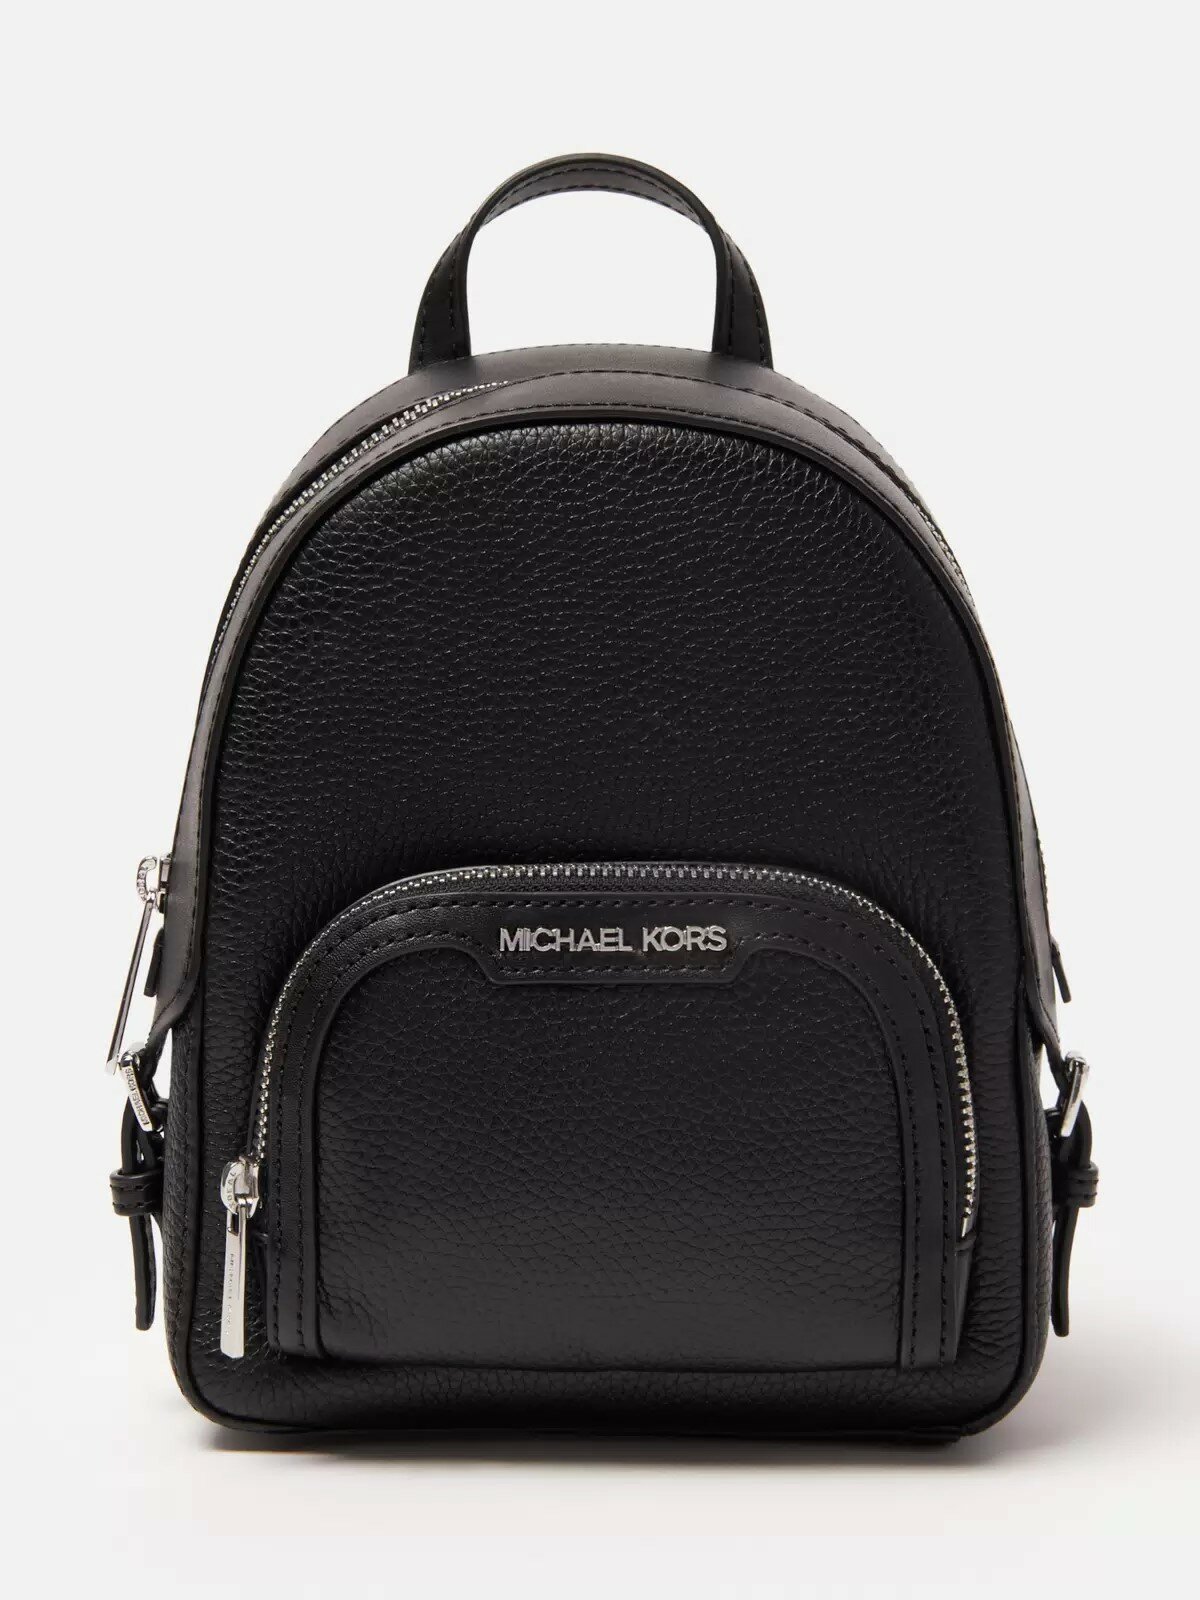 Рюкзак MICHAEL KORS Женский черный кожанный классический рюкзачок с серебряной фурнитурой Michael Kors Jaycee XS Pebbled Leather Backpack 35T2S8TB1LB